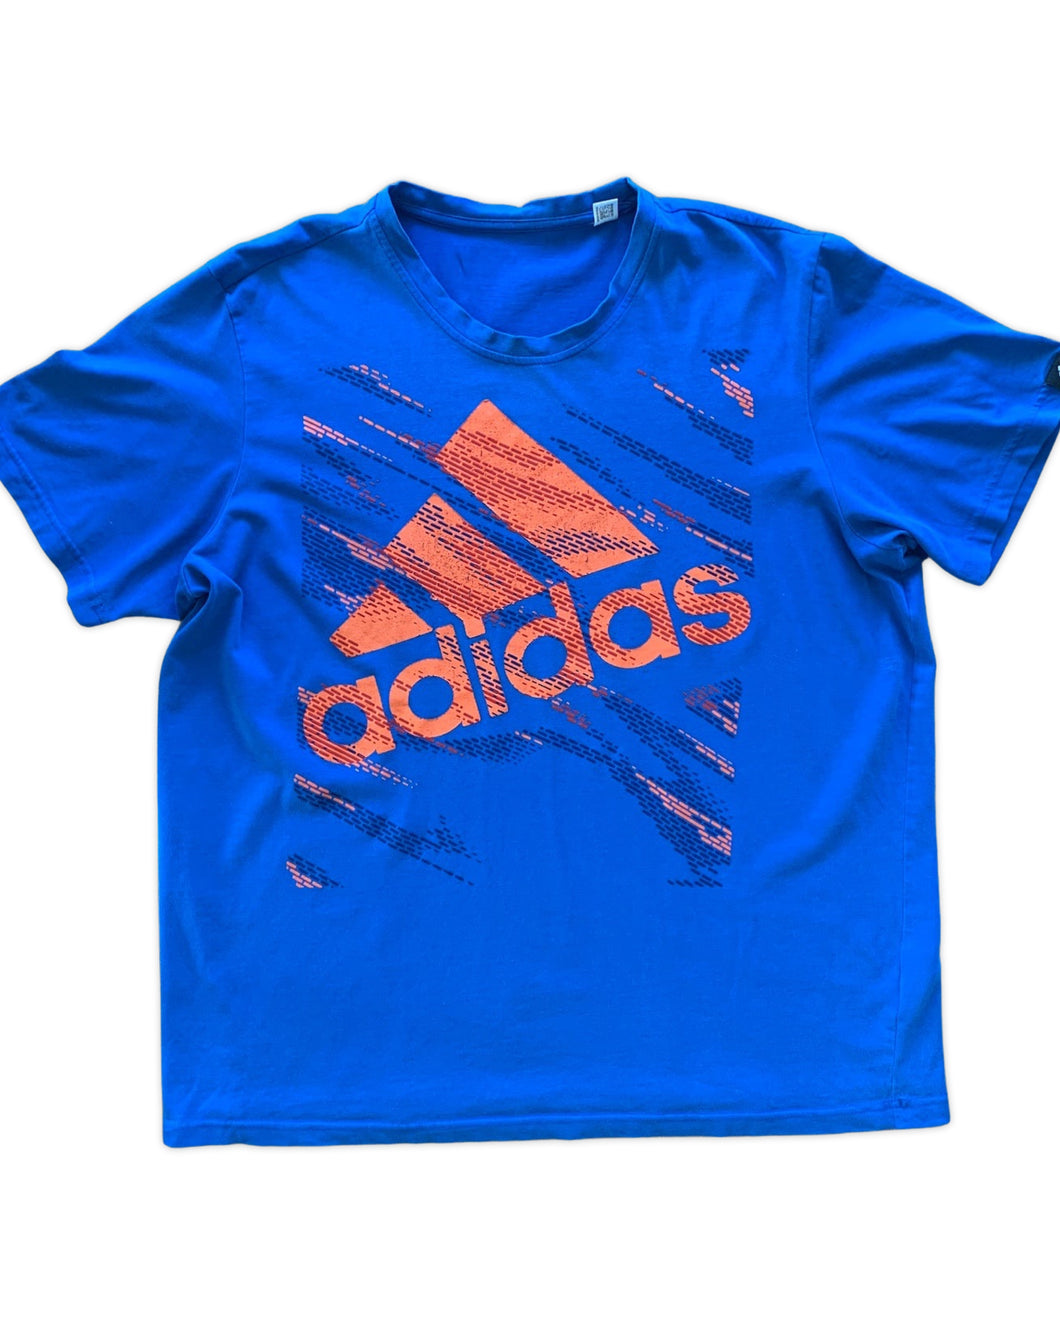 ADIDAS Size L Vintage Blue Front Print T-Shirt Men's